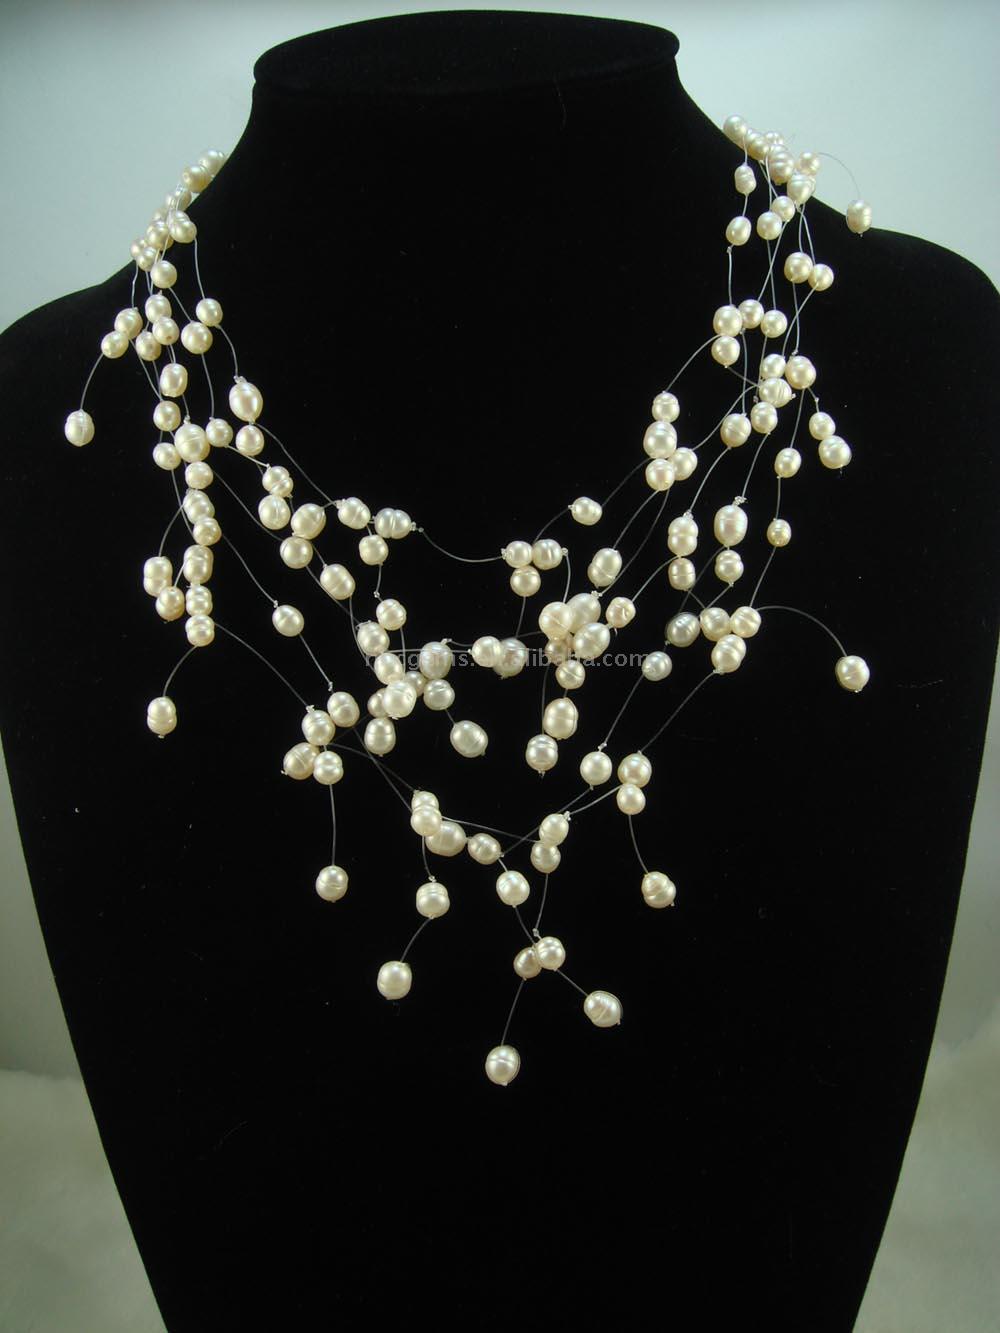  Pearl Necklace 1021 (Perlenkette 1021)